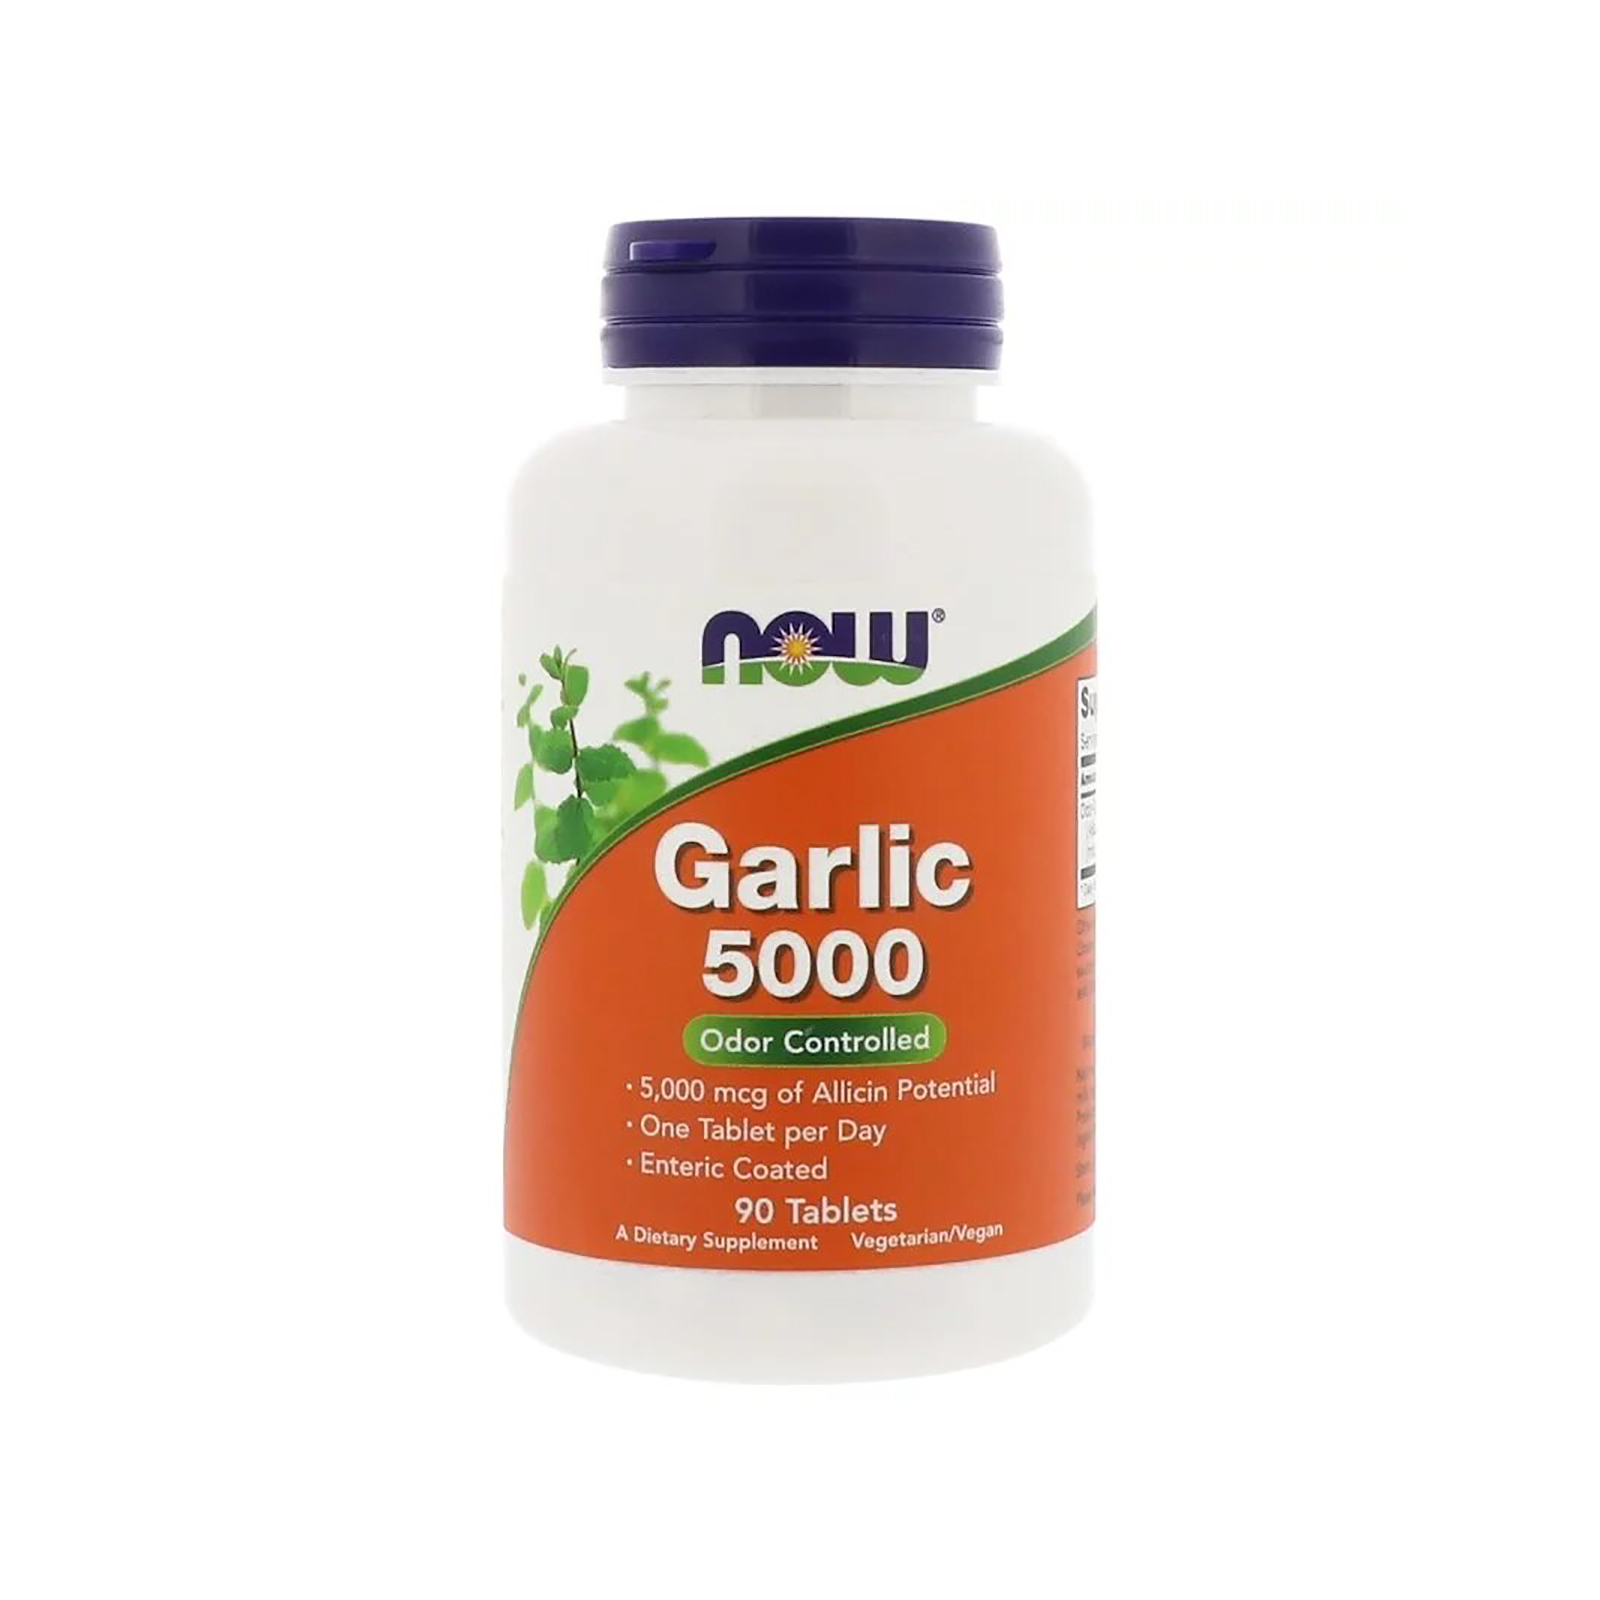 Трави Now Foods Часник 5000мг, Garlic 5000, 90 таблеток (NOW-01814)